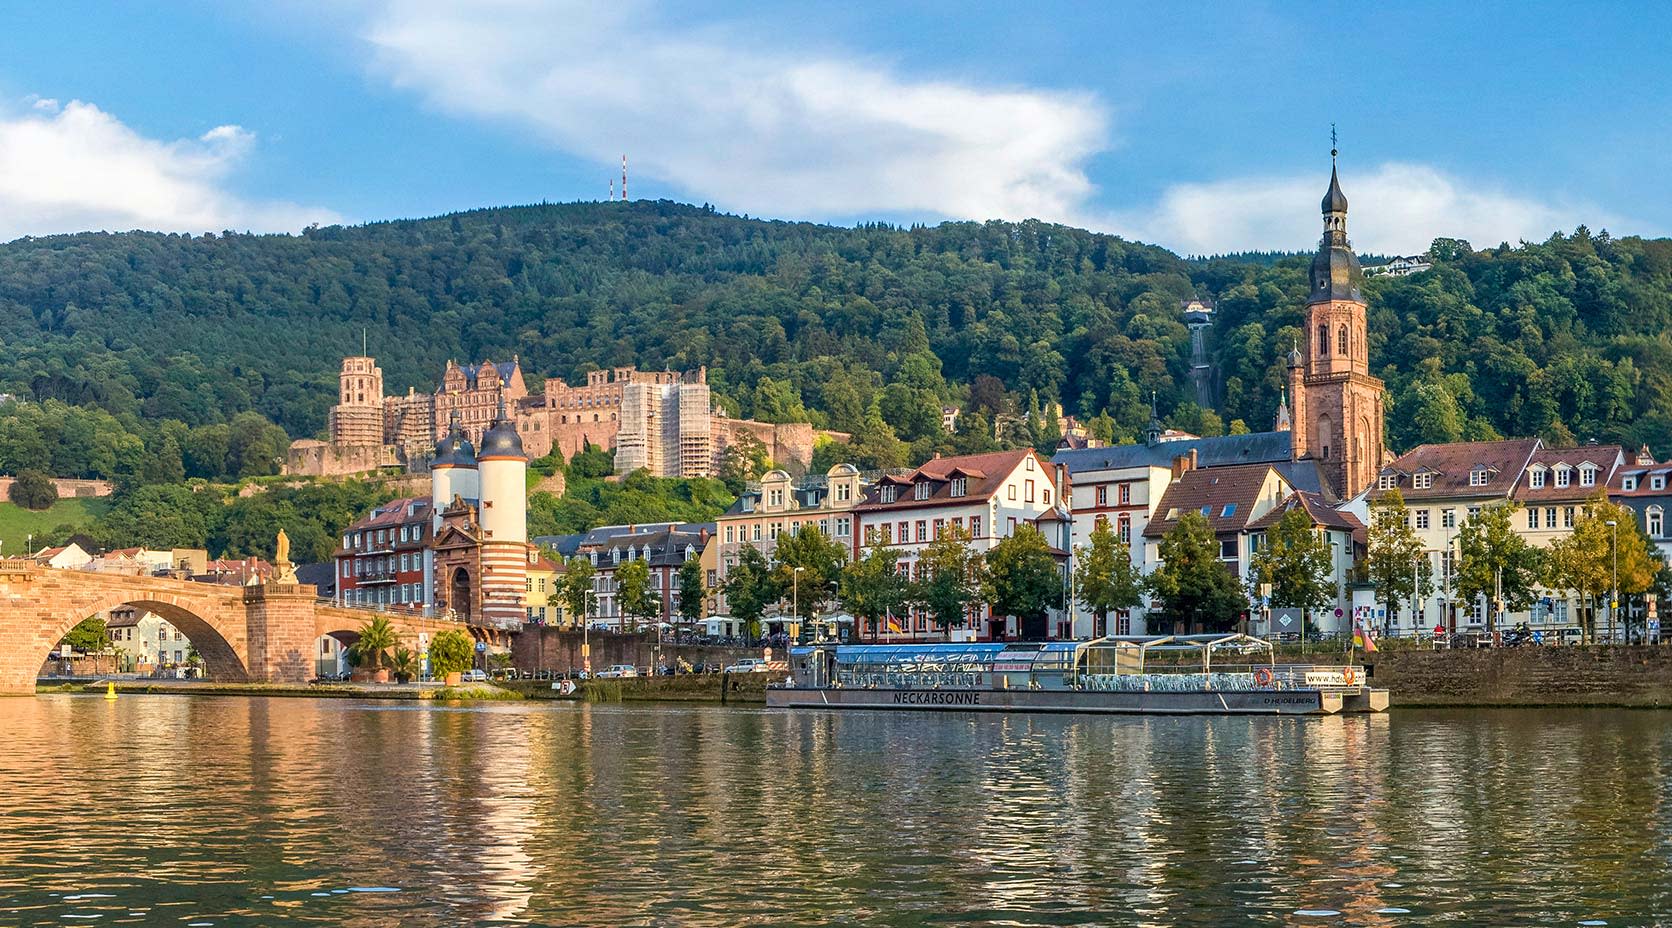 Ansicht Heidelberg - Im Vordergrund der Neckar, im Hintergrund die alte Brücke, das Schloss und die Altstadt mit Heiliggeistkirche